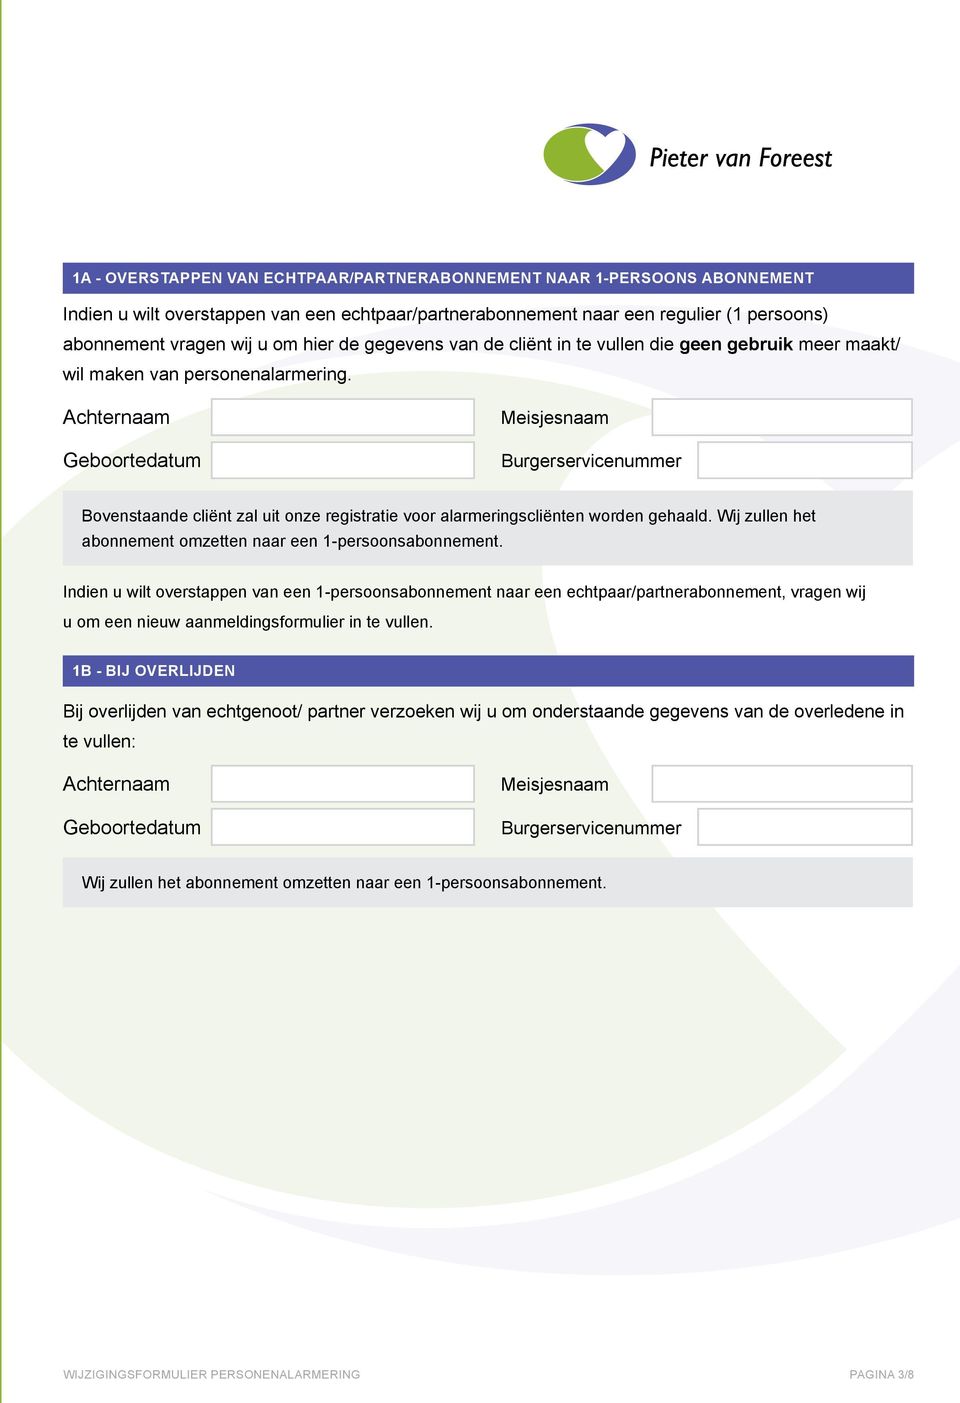 Achternaam Geboortedatum Meisjesnaam Burgerservicenummer Bovenstaande cliënt zal uit onze registratie voor alarmeringscliënten worden gehaald.